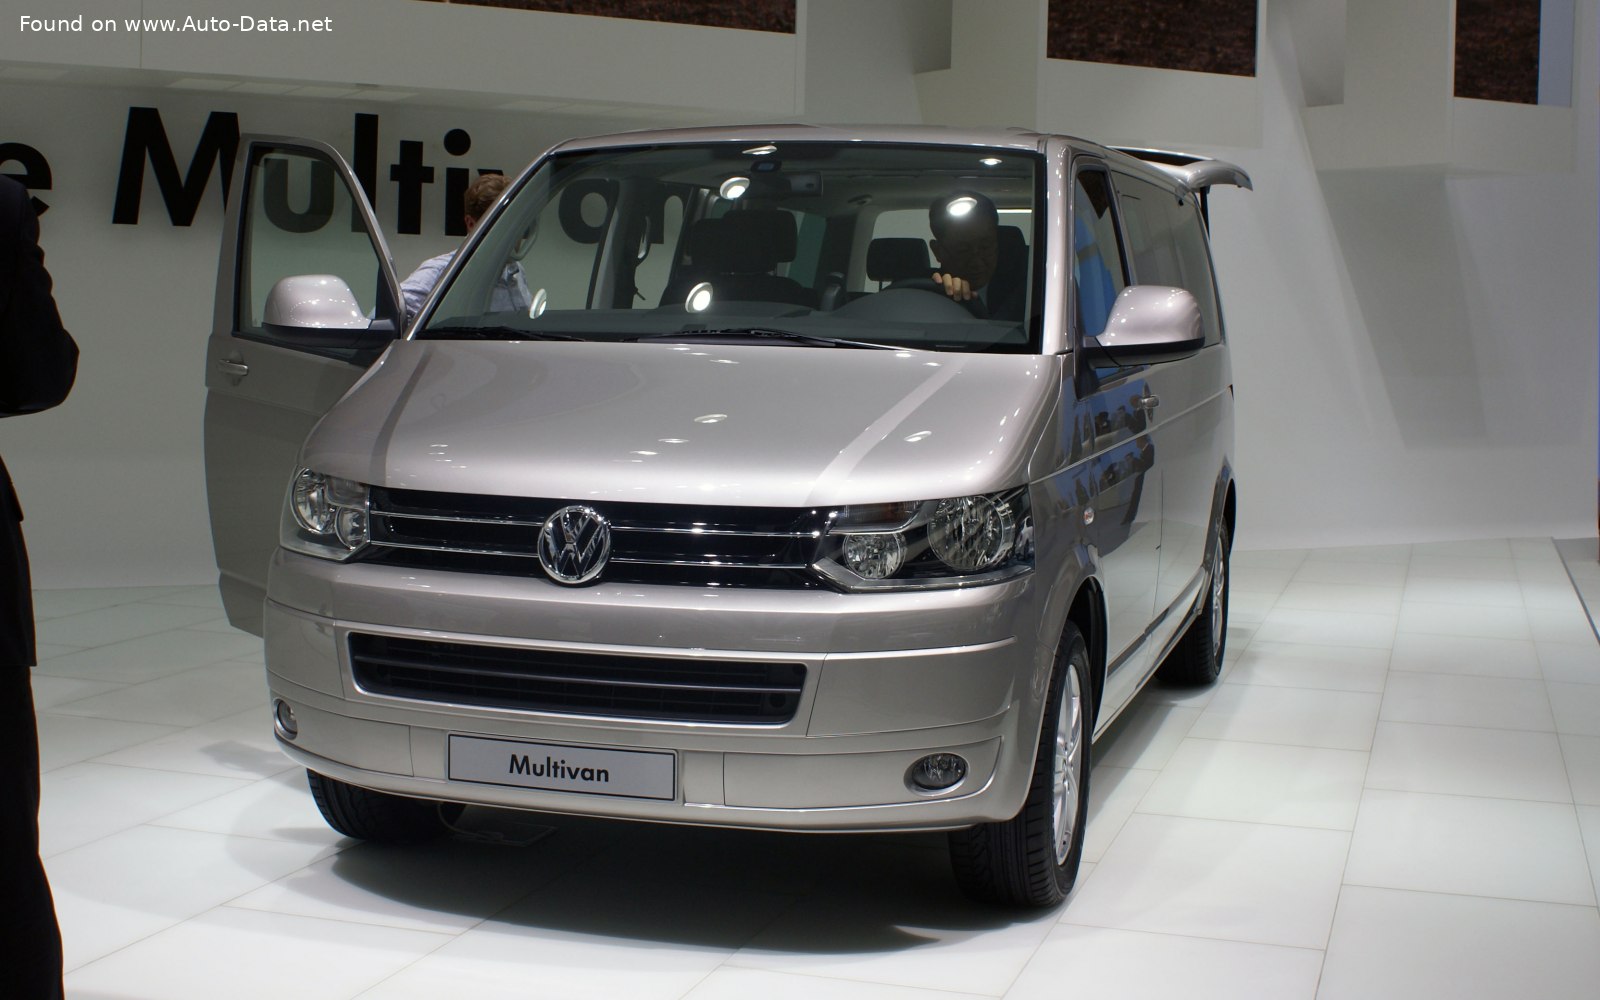 2009 Volkswagen Multivan (T5, facelift 2009) 2.0 TDI (140 Hp